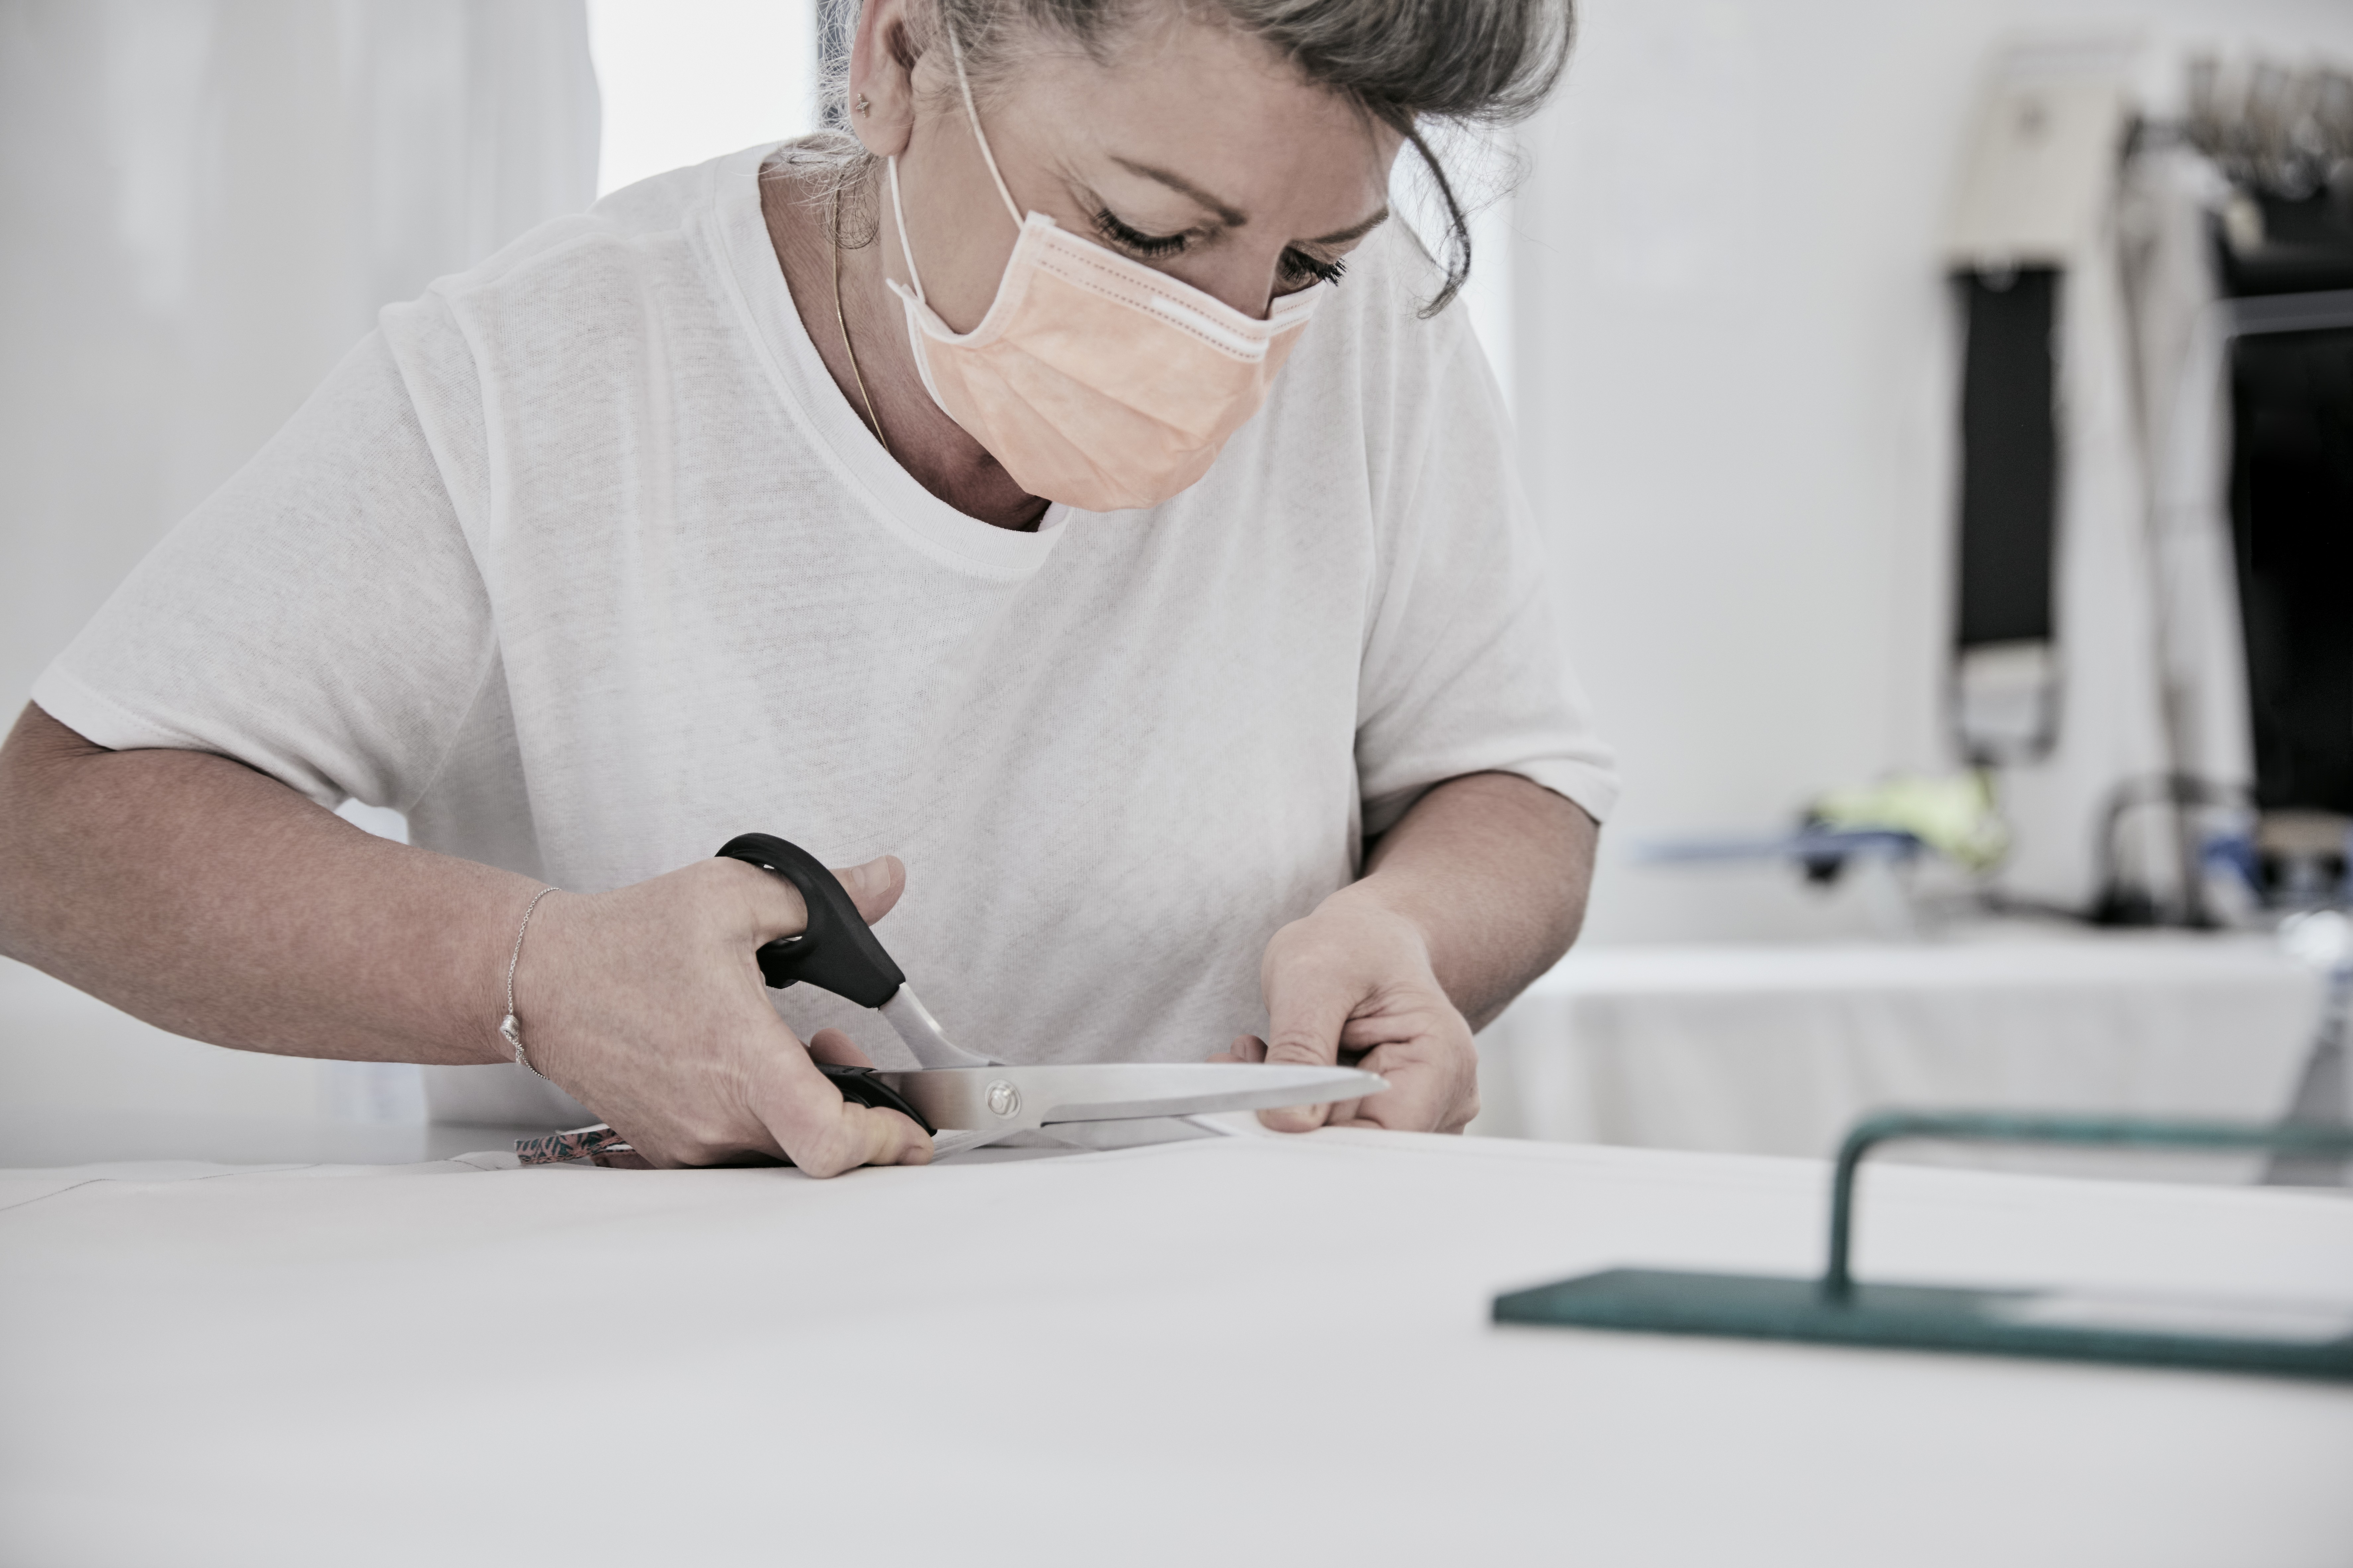 Louis Vuitton usou sua expertise em moda e infra-estrutura para produzir máscaras de proteção (Foto: Divulgação)